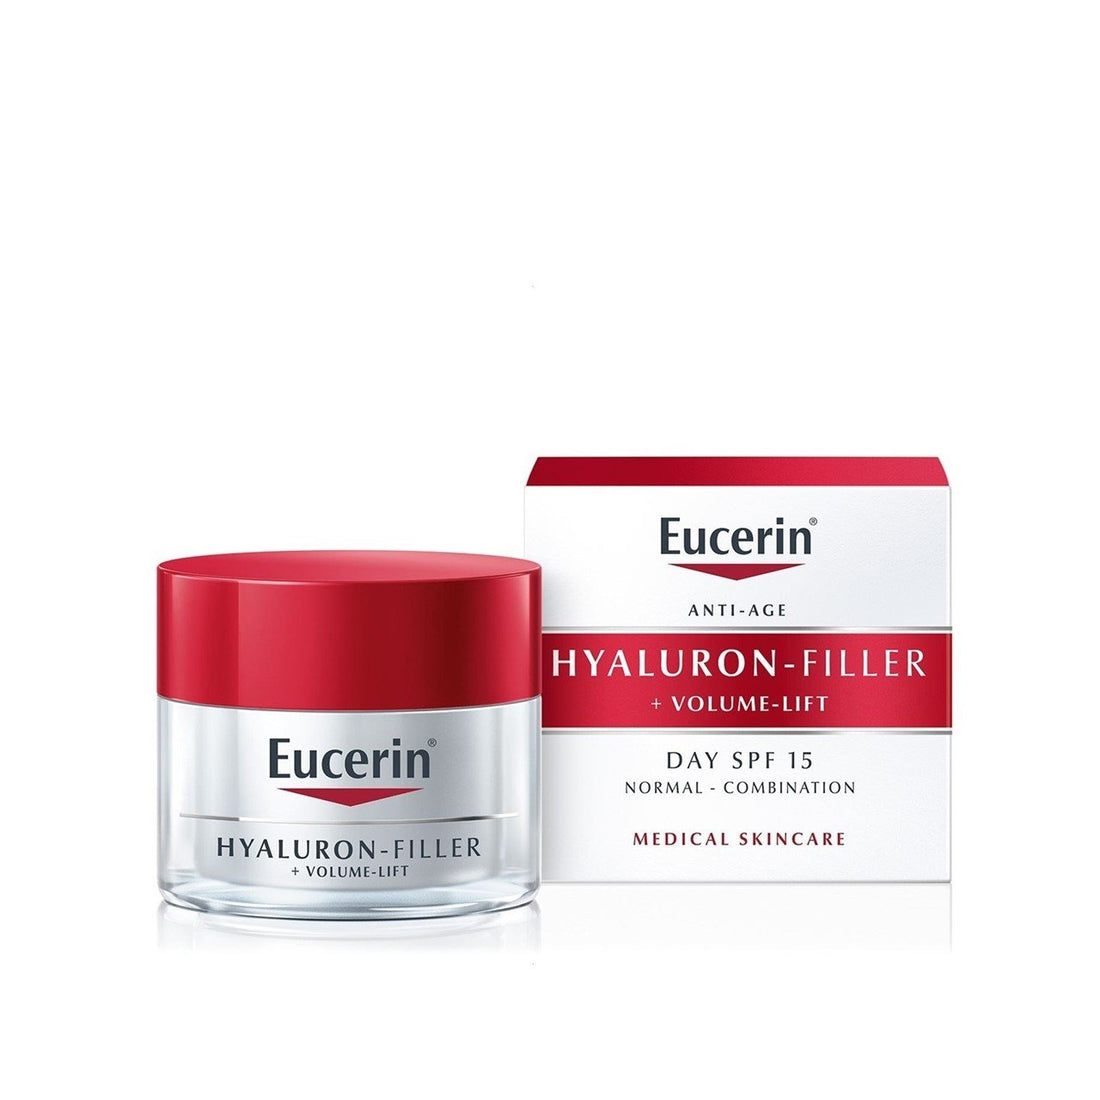 Eucerin Hyaluron-Filler + Volume-Lift Jour SPF15 50 ml